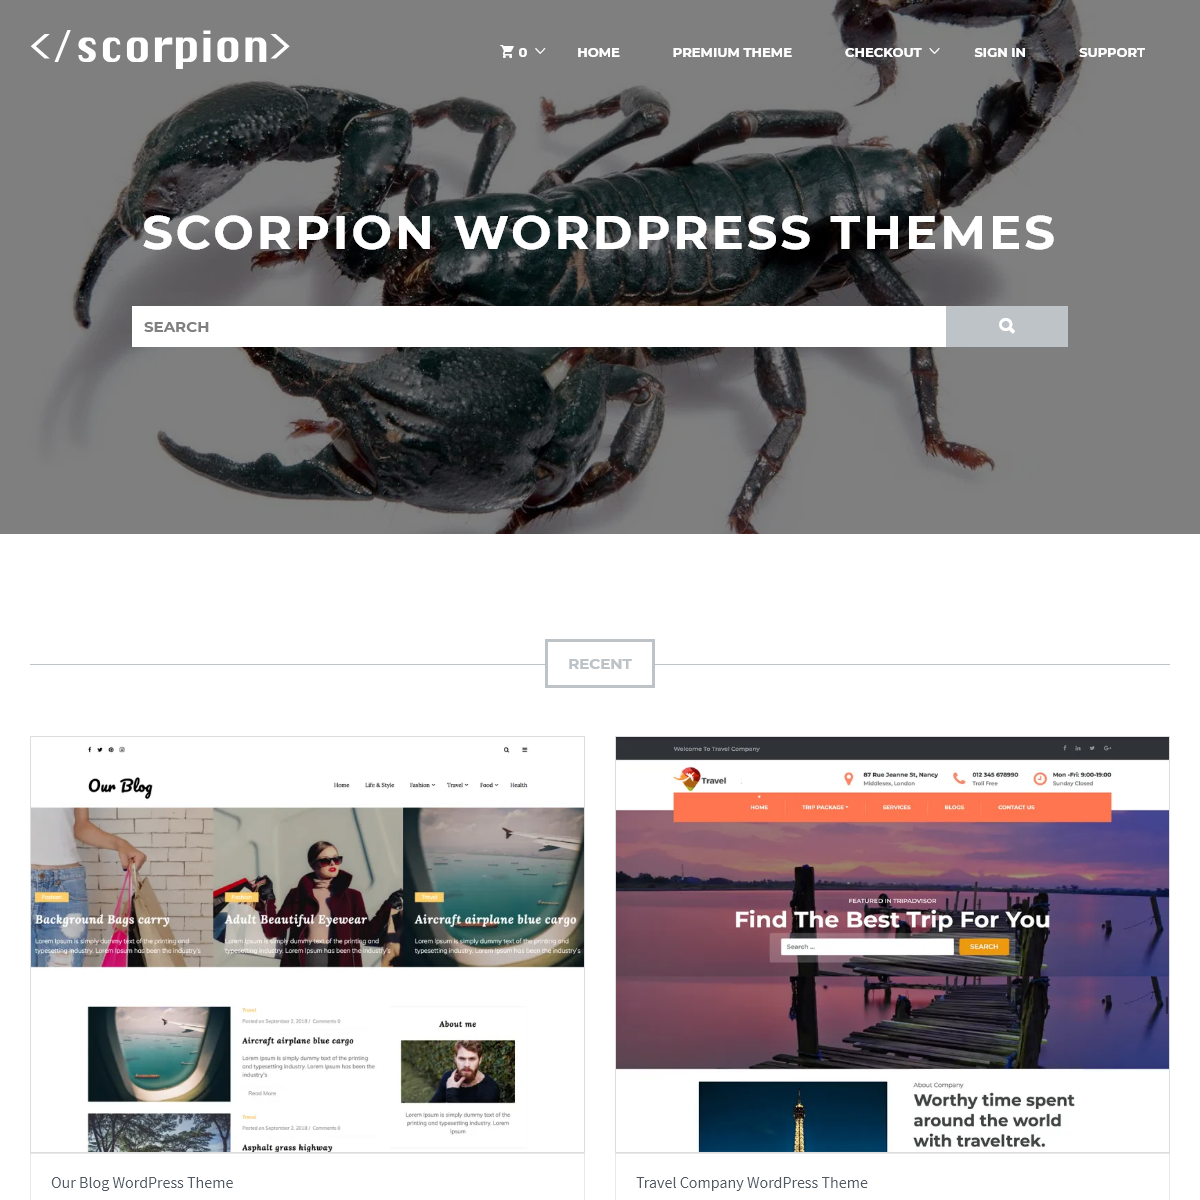 Scorpion Themes â€“ Theme by Team Scorpion